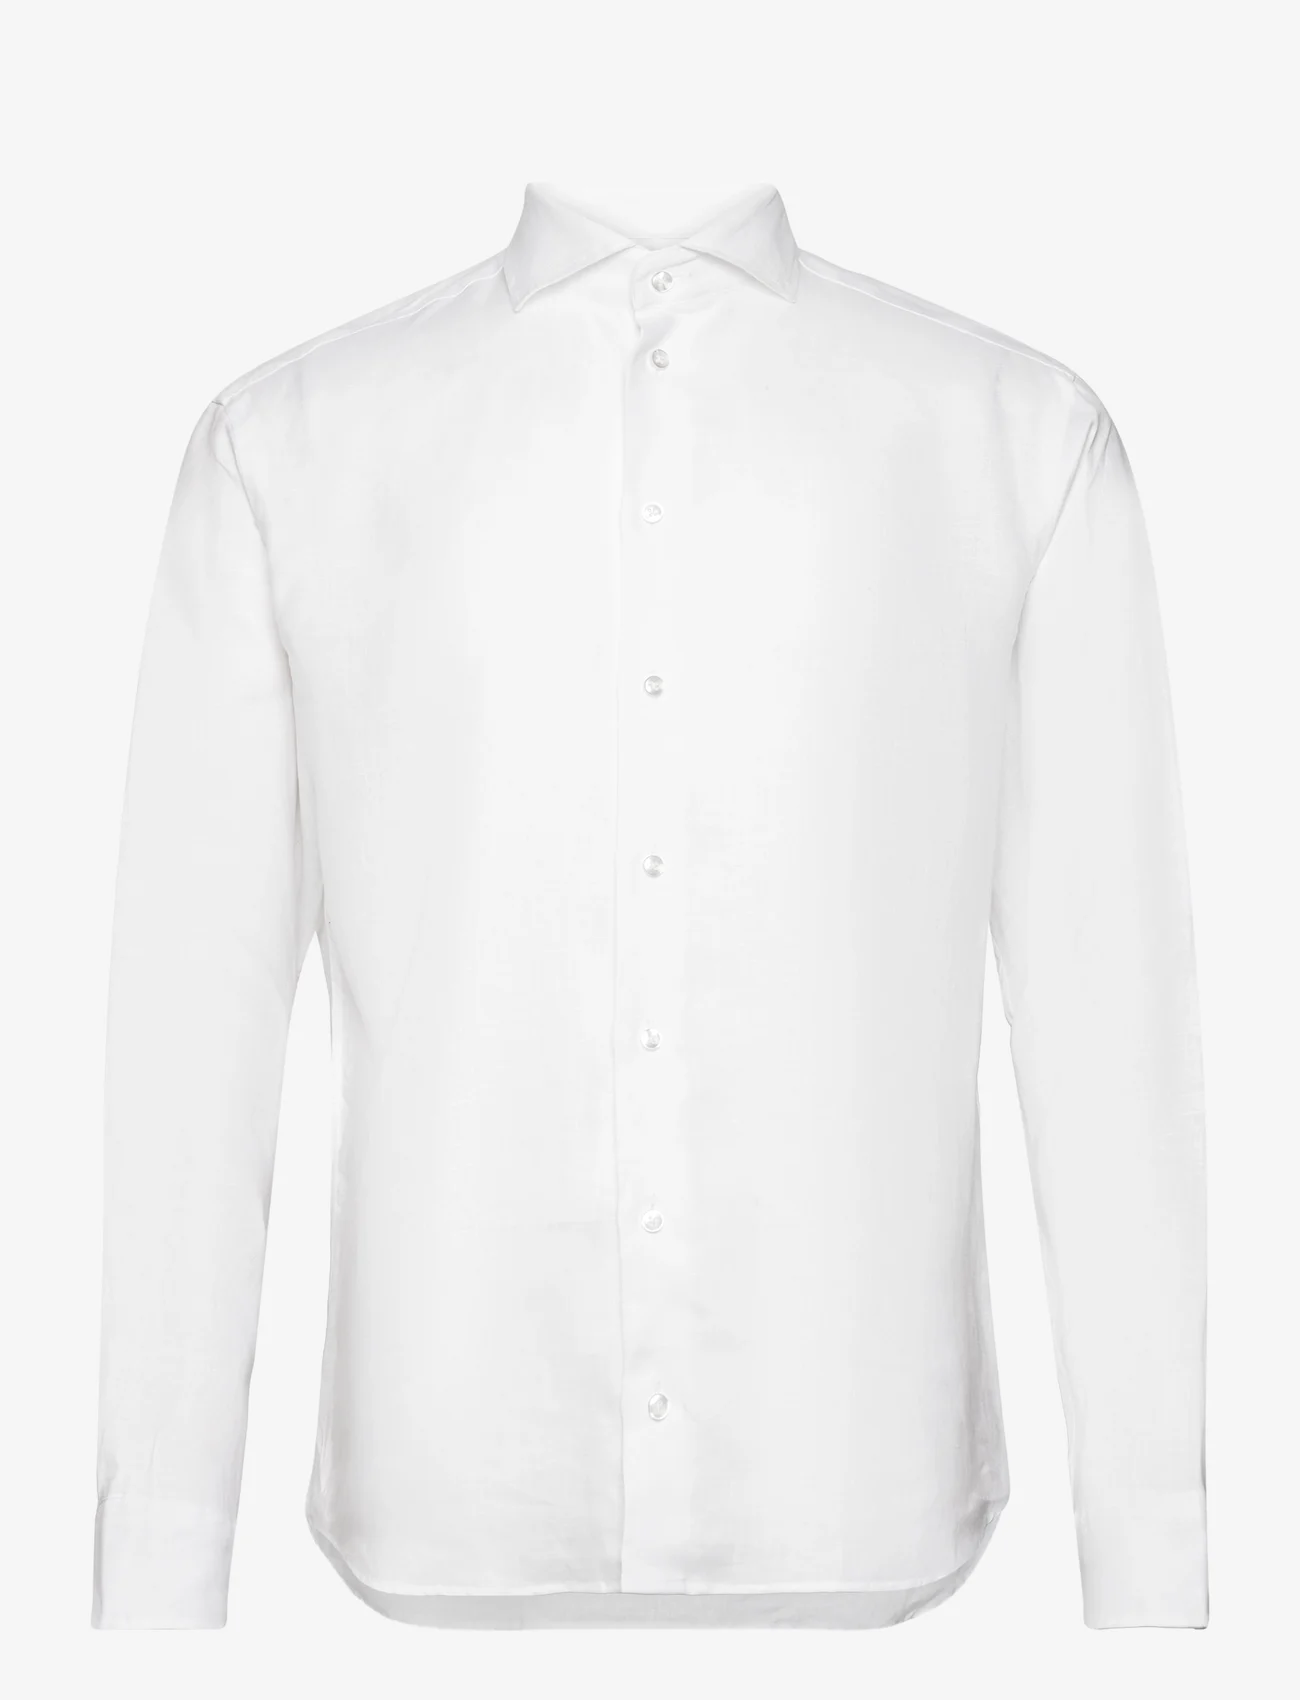 Bosweel Shirts Est. 1937 - Regular fit Men shirt - linskjorter - white - 0